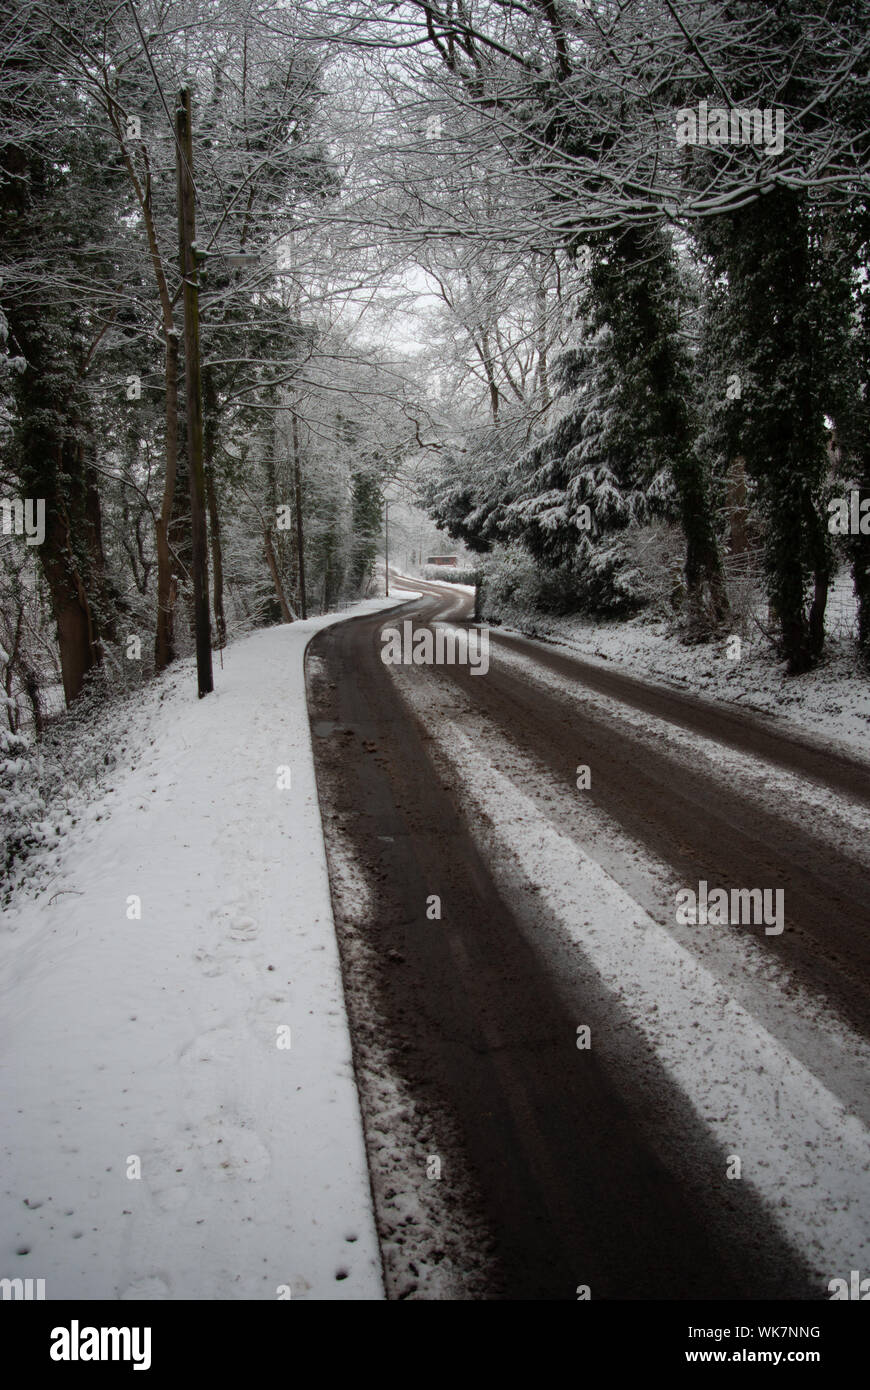 Route couverte de neige et la chaussée mouillée avec les voies d'entrer dans la distance (Portrait) Banque D'Images